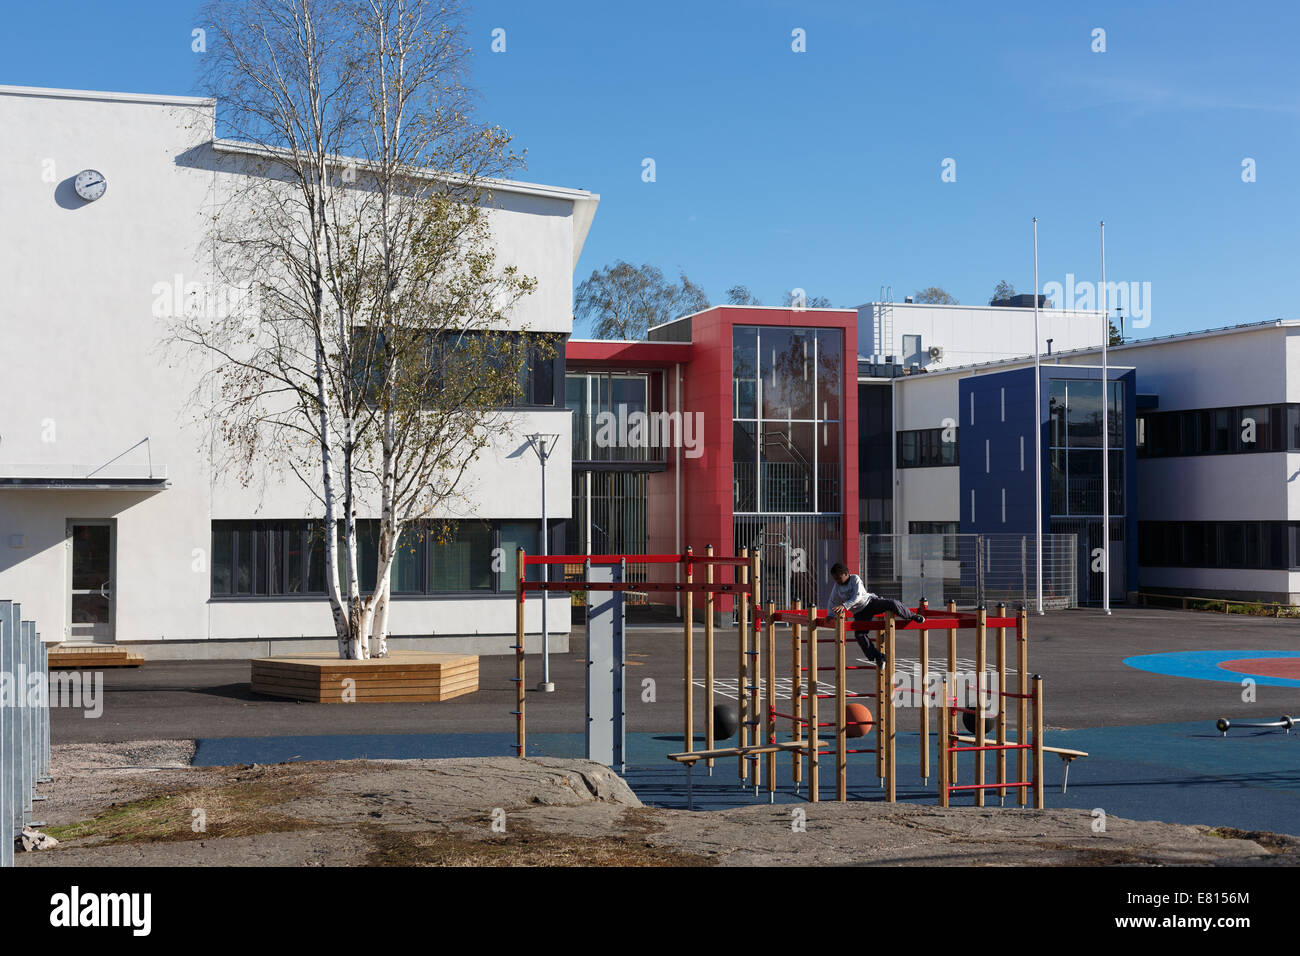 Il cortile anteriore di un nuovo e moderno 2014 Helsinki Kulosaari edificio scolastico è dotato di un parco giochi per gli alunni. Foto Stock